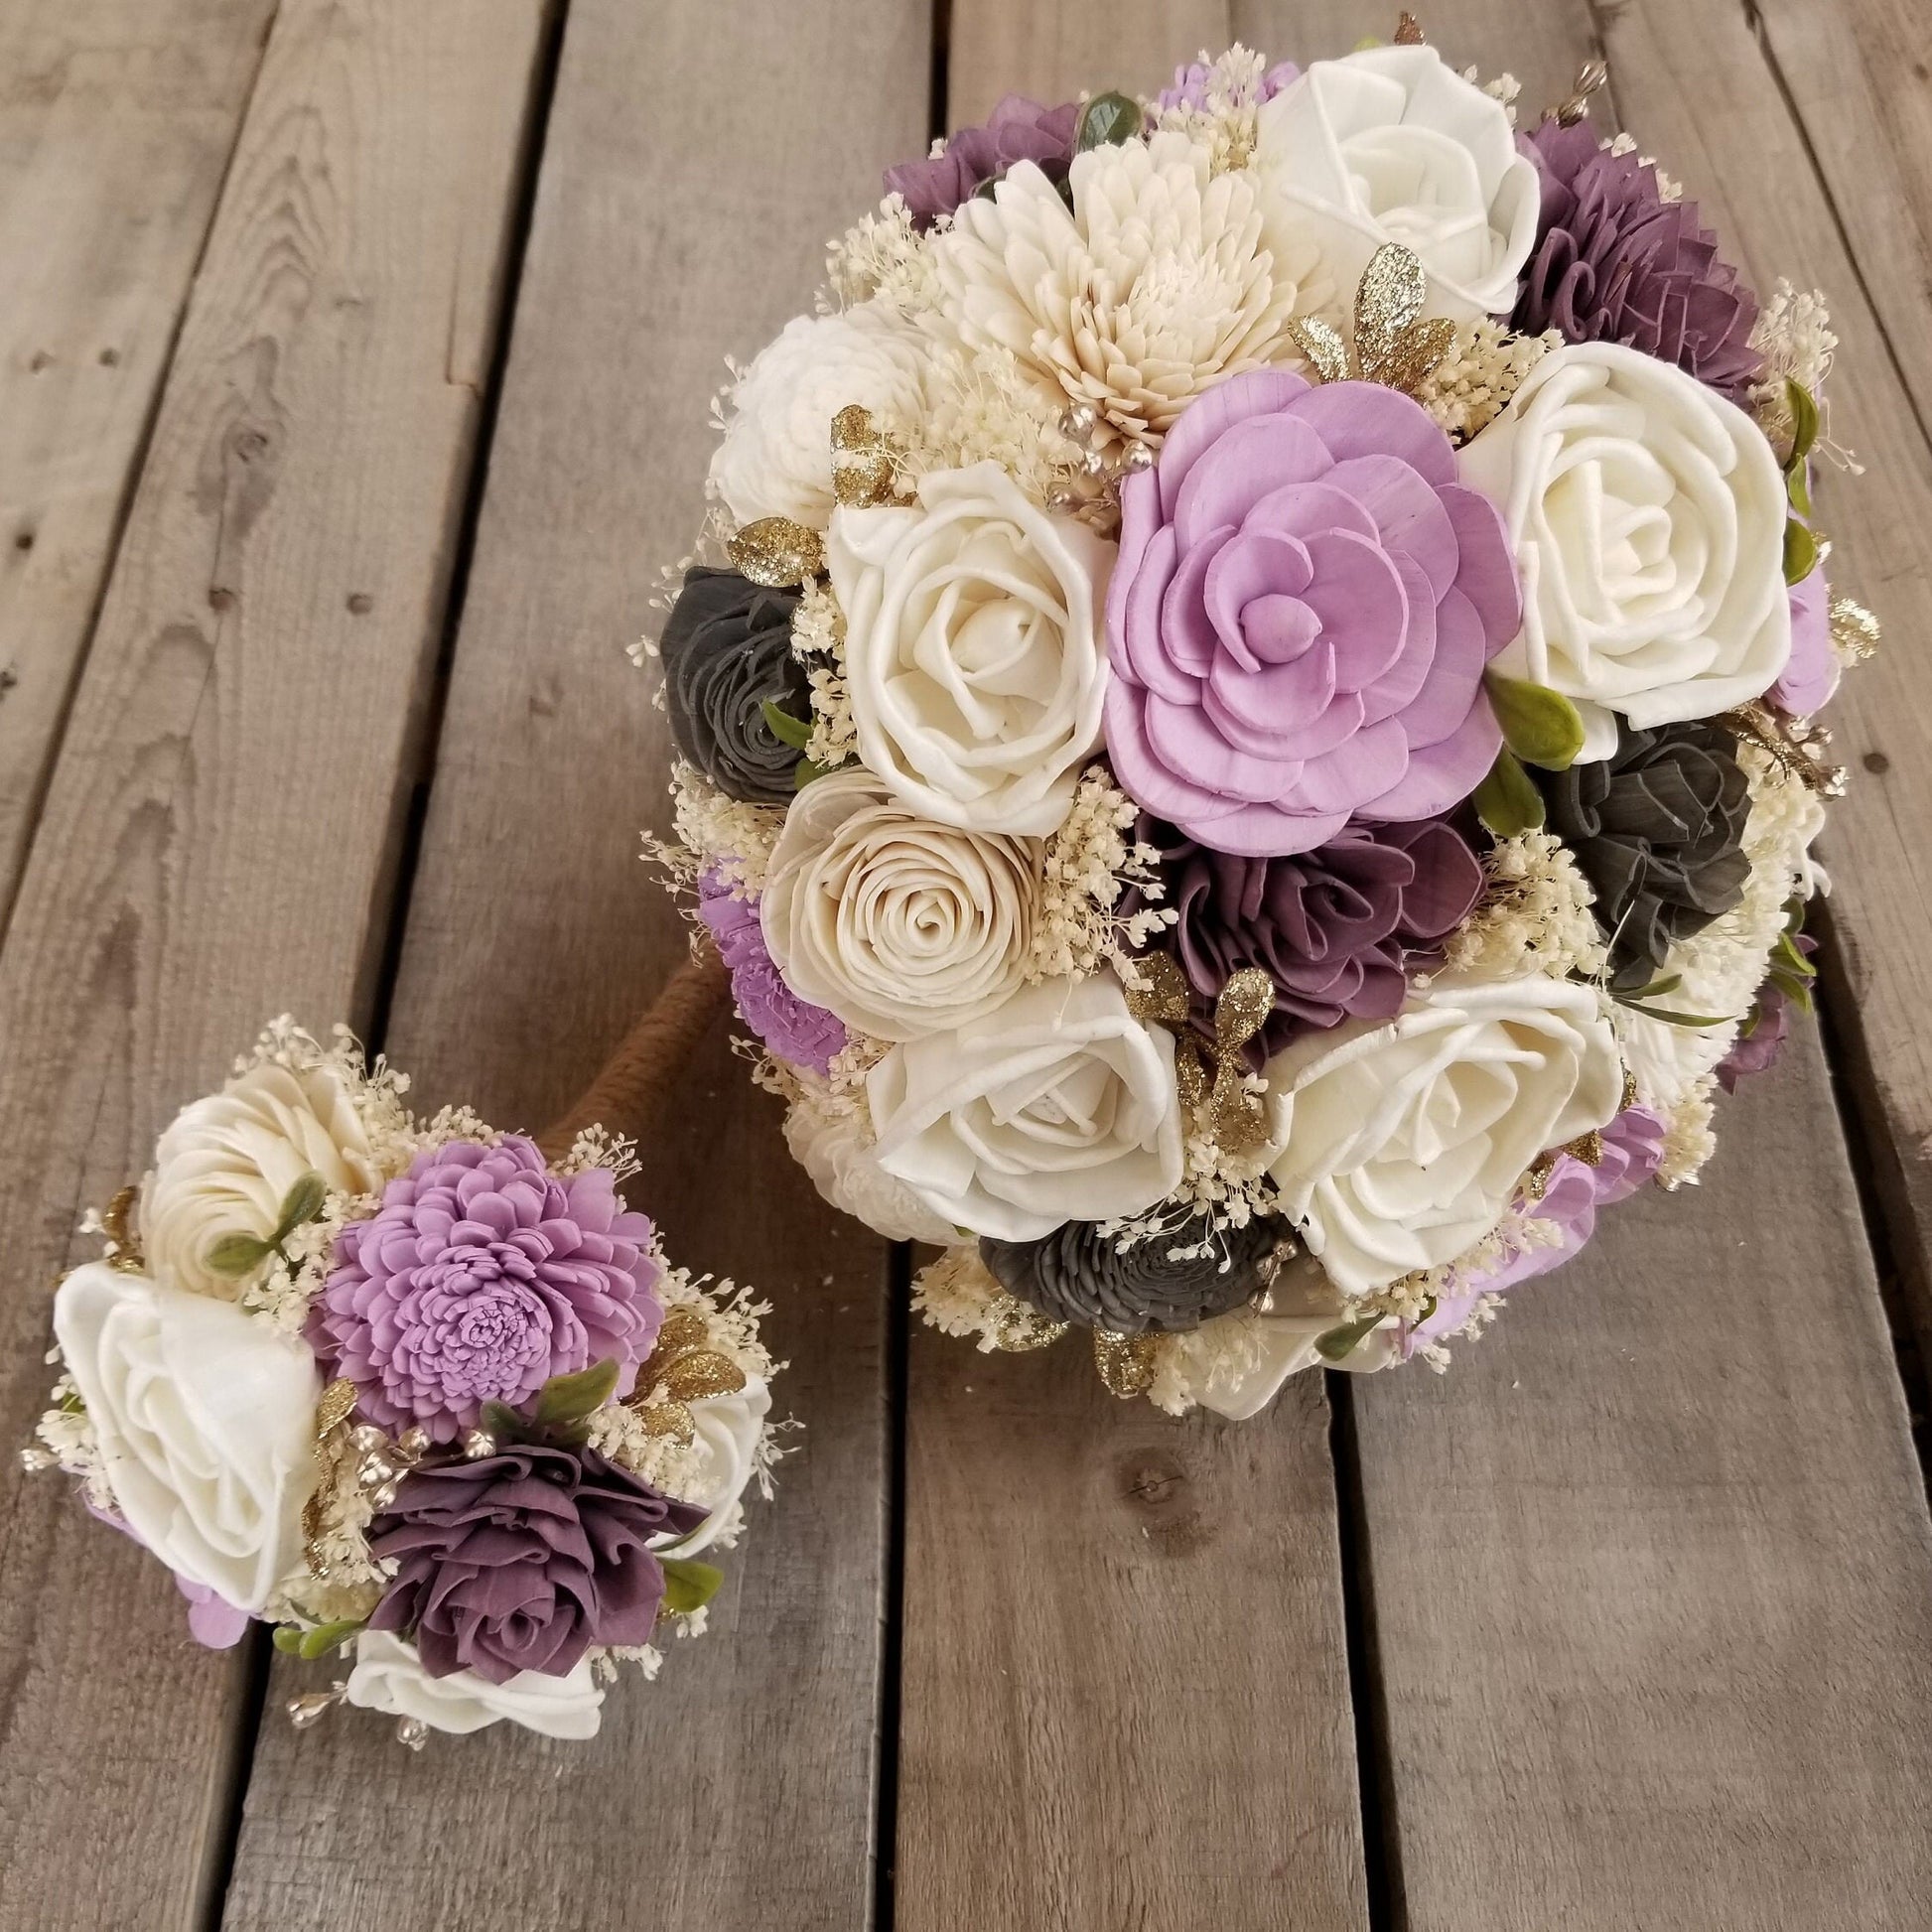 Wood Flowers Bouquet, Plum Wooden Bouquets, Lavender Bridal Bouquet, Wooden Bridal Flowers, Wood Wedding Flowers, Bouquet for Bride